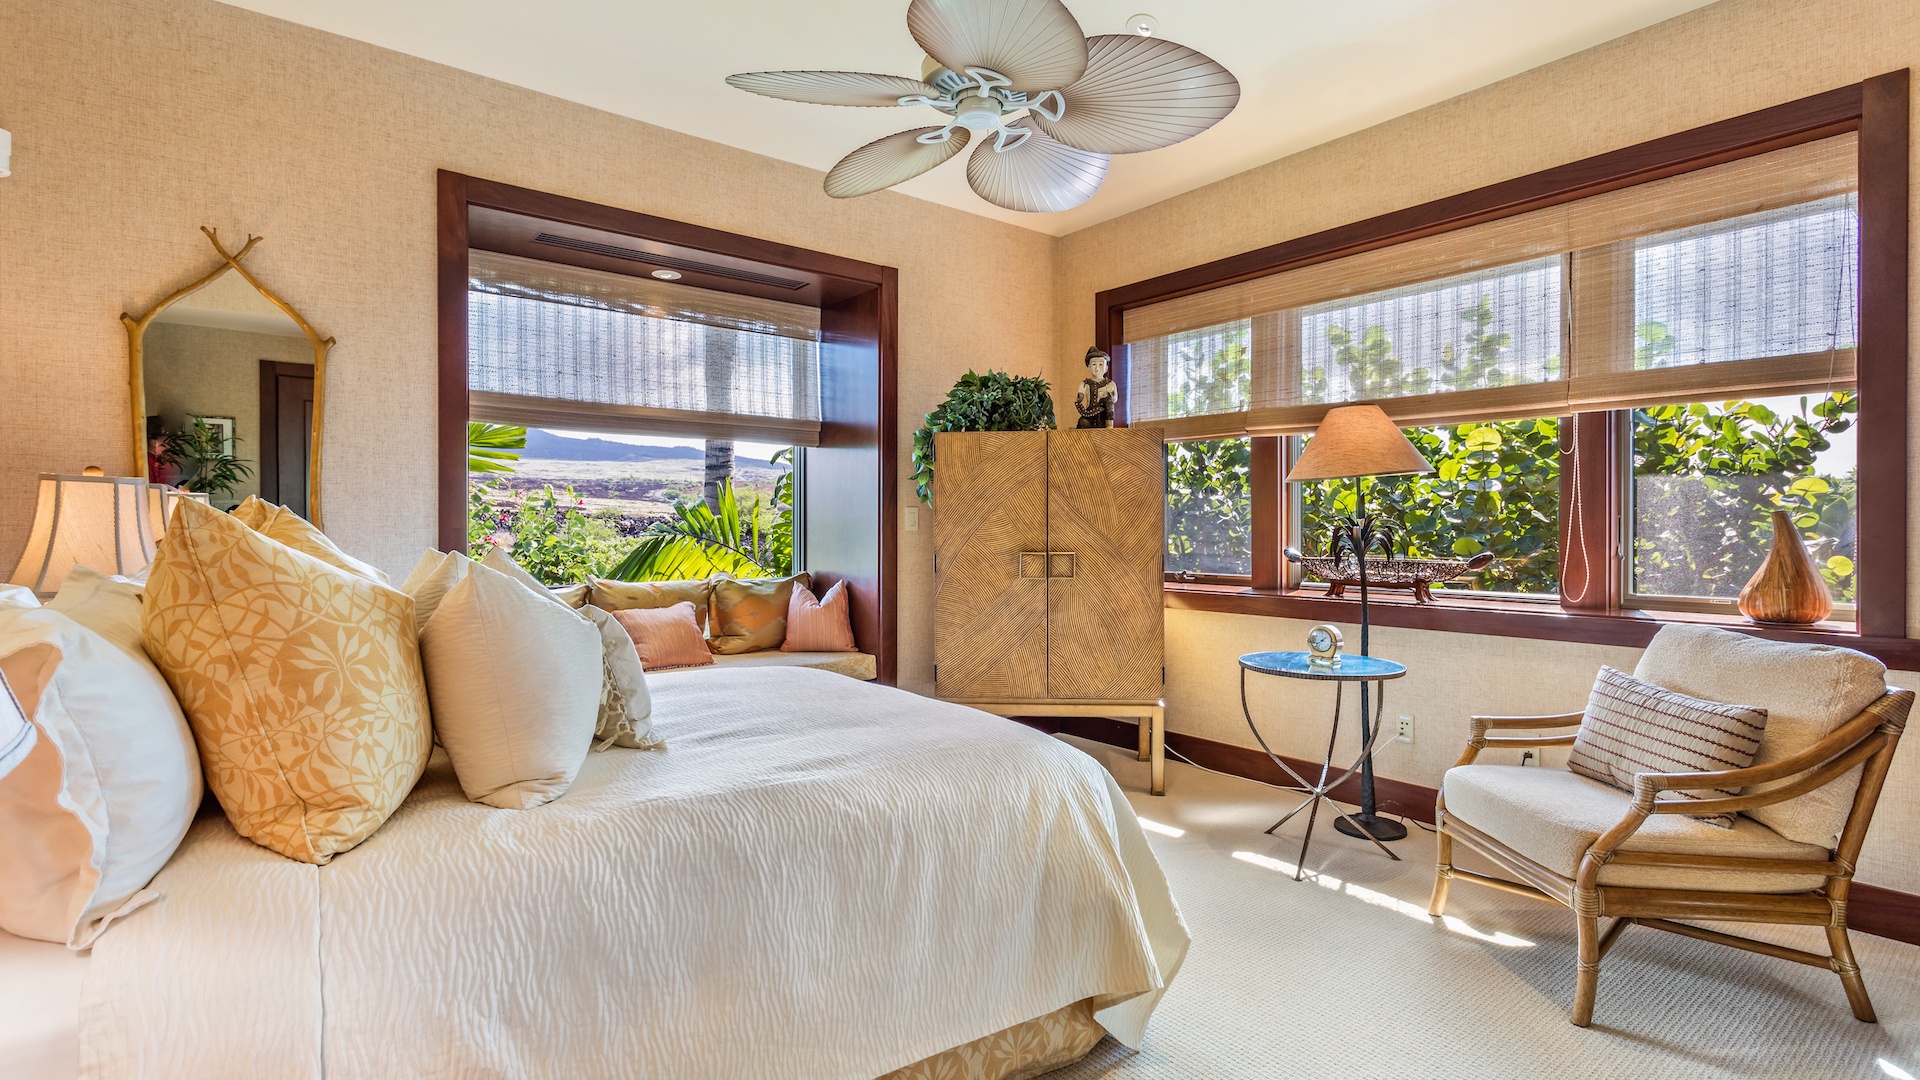 Kailua Kona Vacation Rentals, 2BD Hainoa Villa (2907B) at Four Seasons Resort at Hualalai - Second Bedroom with Queen Bed & Mountain Views.